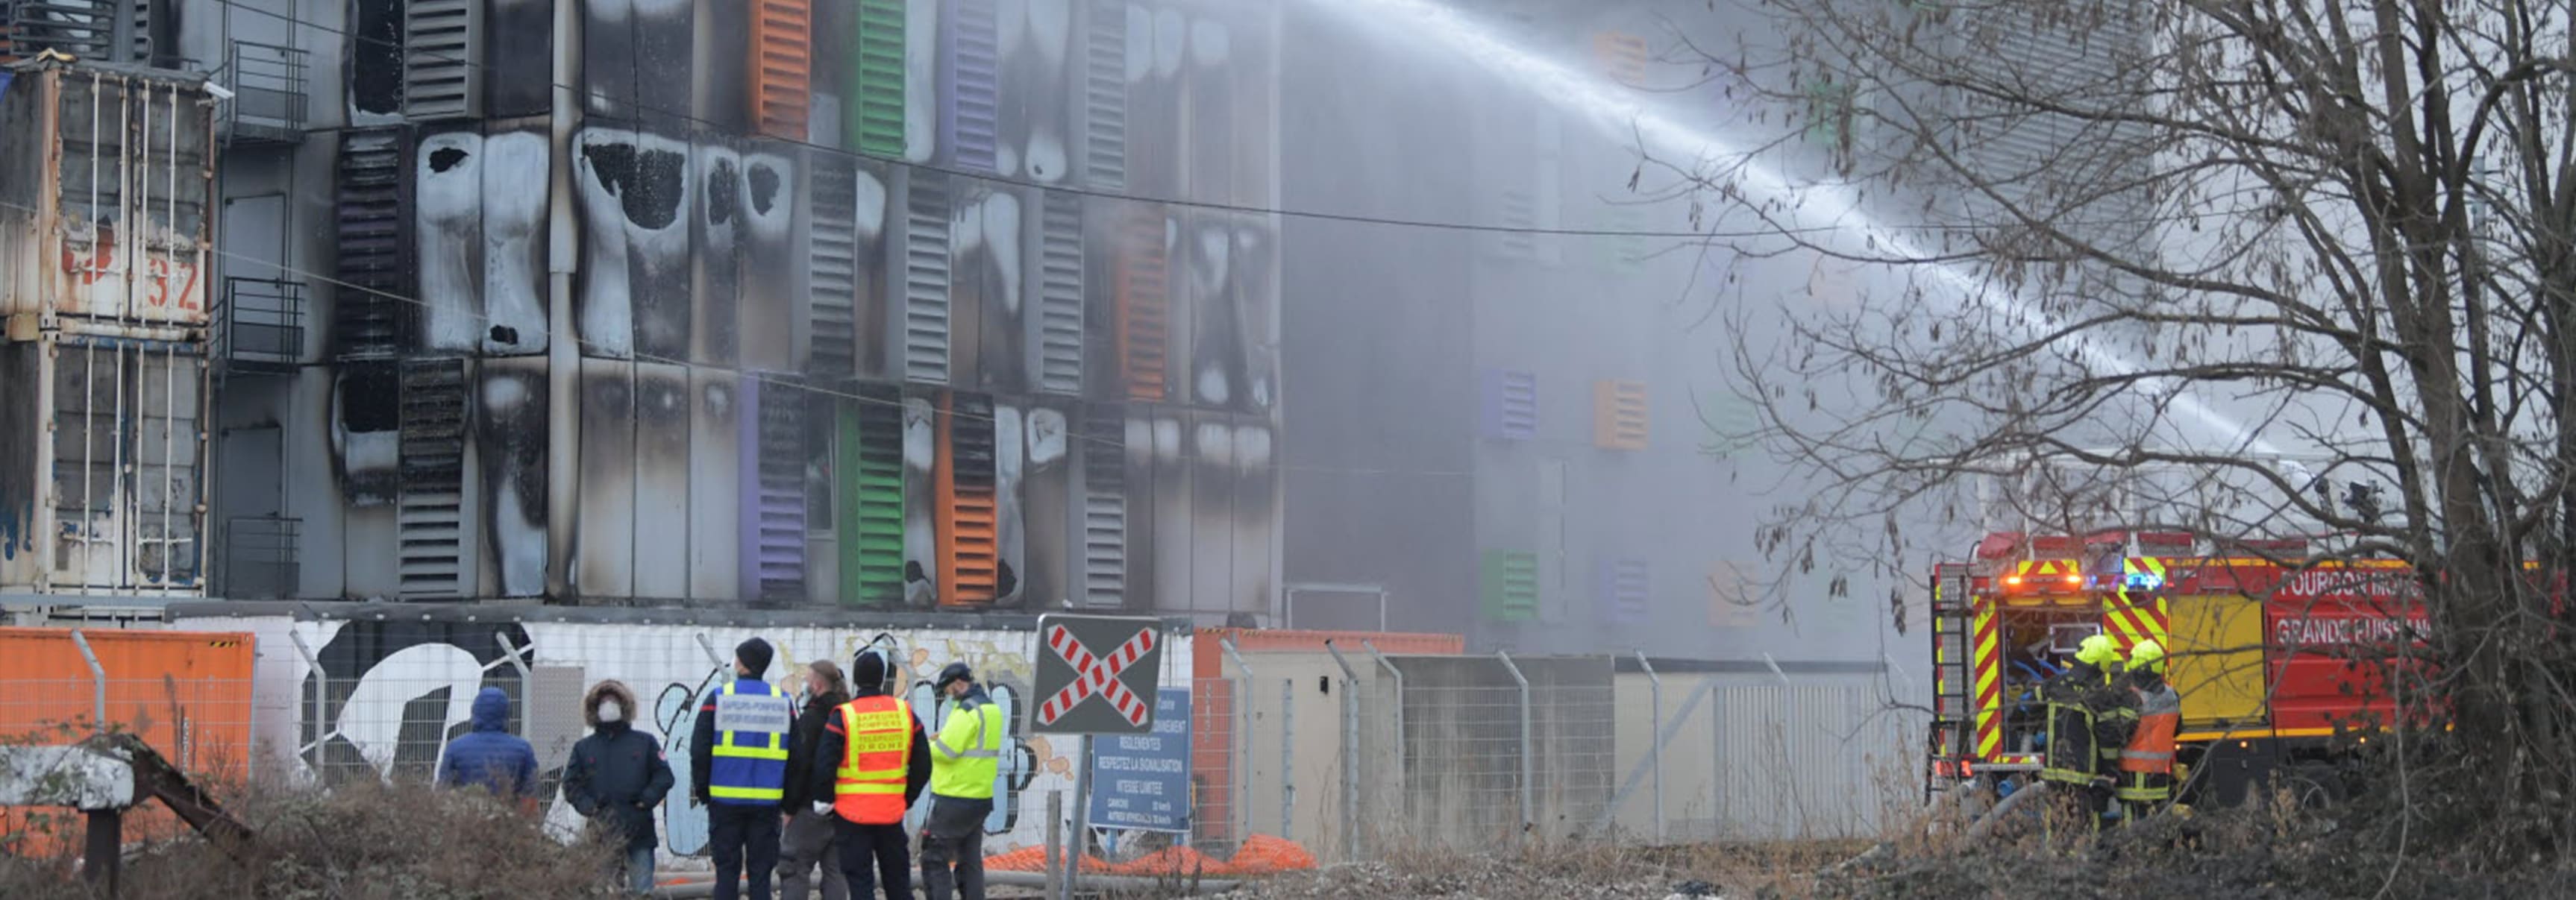 Дата-центр OVH SBG2 сгорел в Страсбурге 